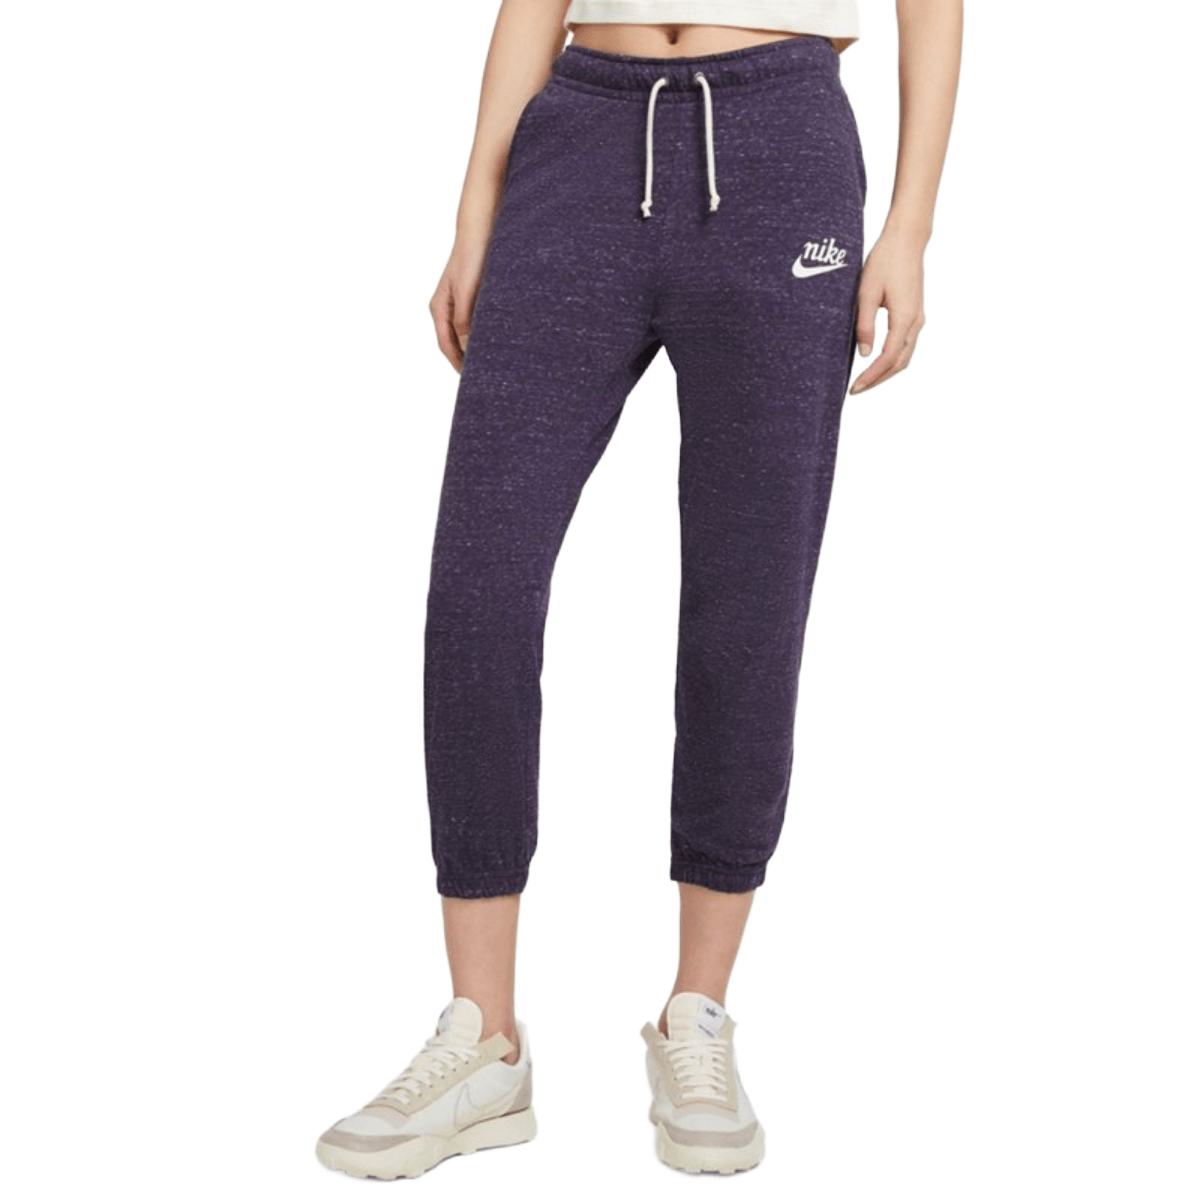 Nike Women's Plus Size Gym Vintage Capri Pants, Purple, 1X